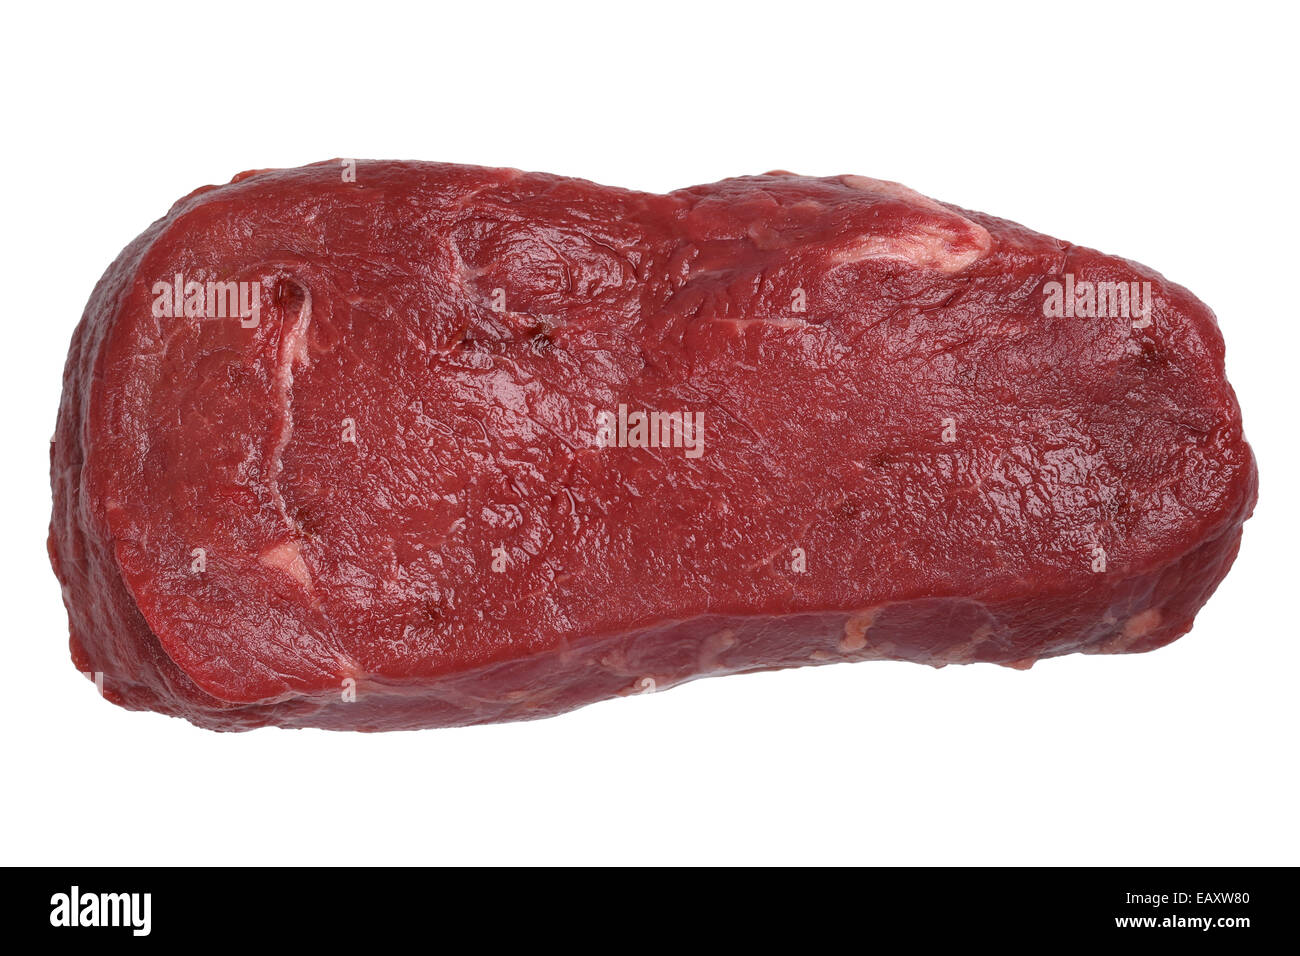 Rohes Rindfleisch Fleisch Steak auf einem weißen Hintergrund isoliert Stockfoto